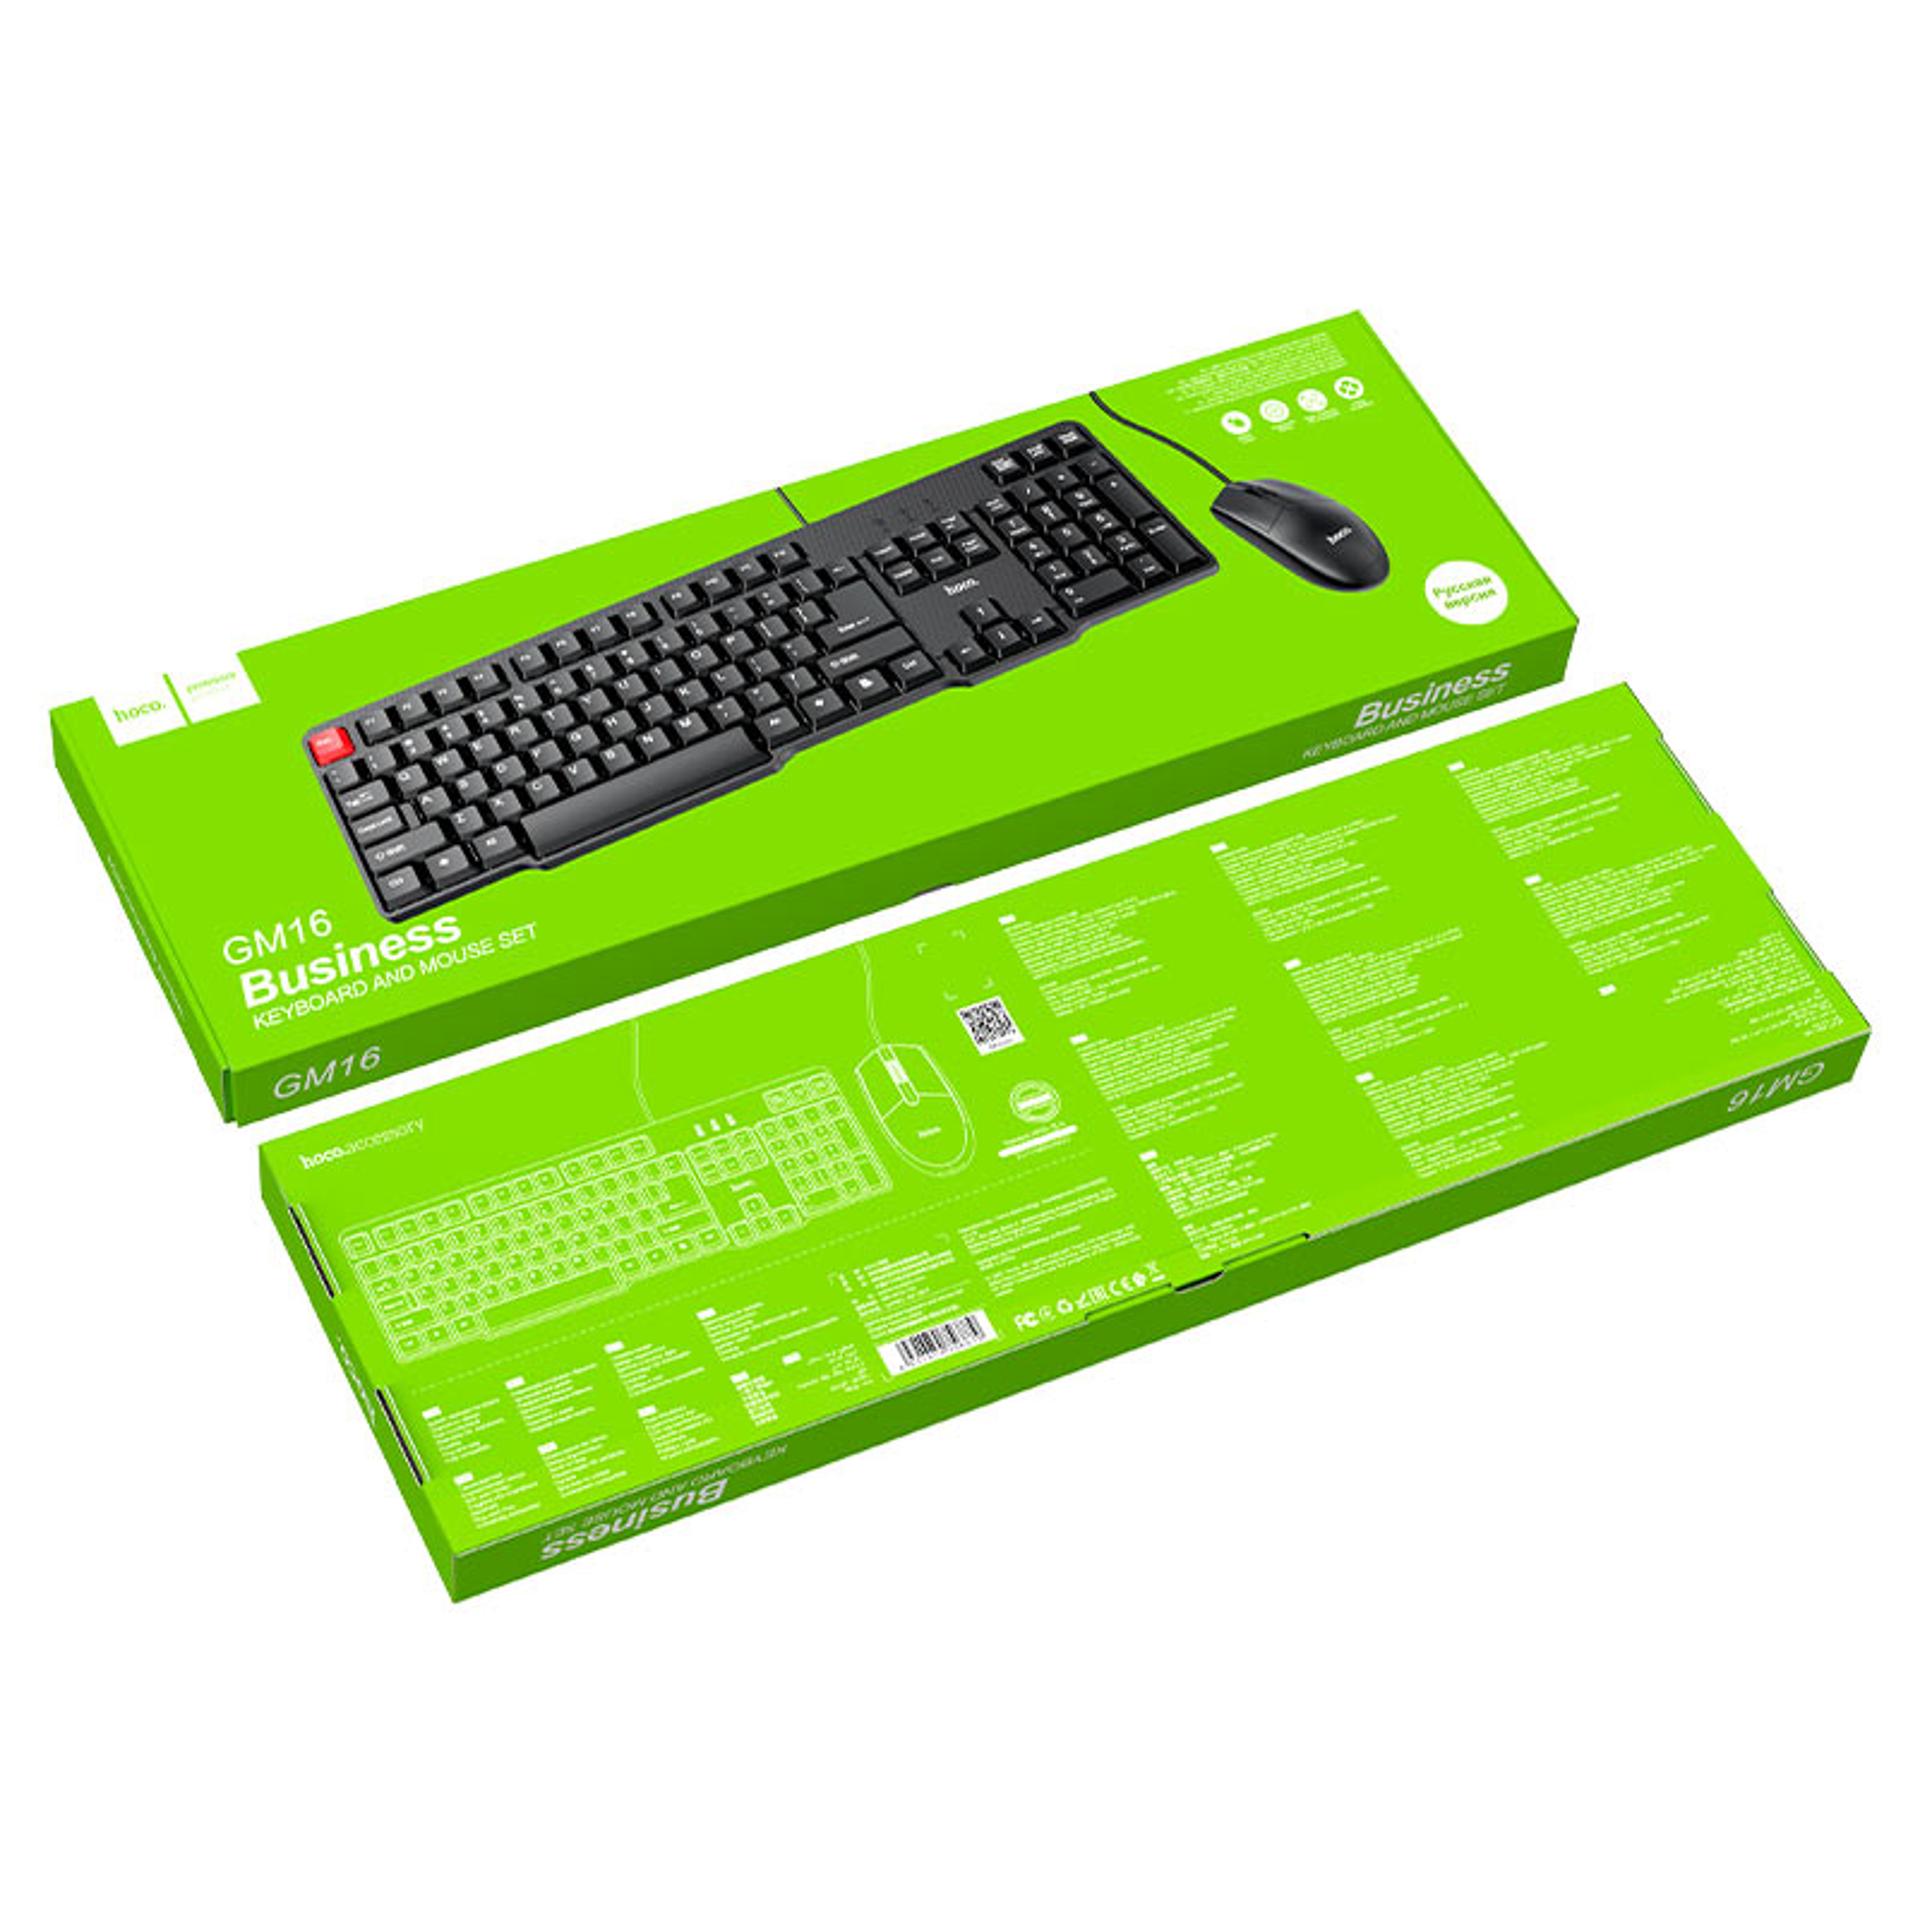 Товар - “Проводная клавиатура + мышь набор Hoco GM16”